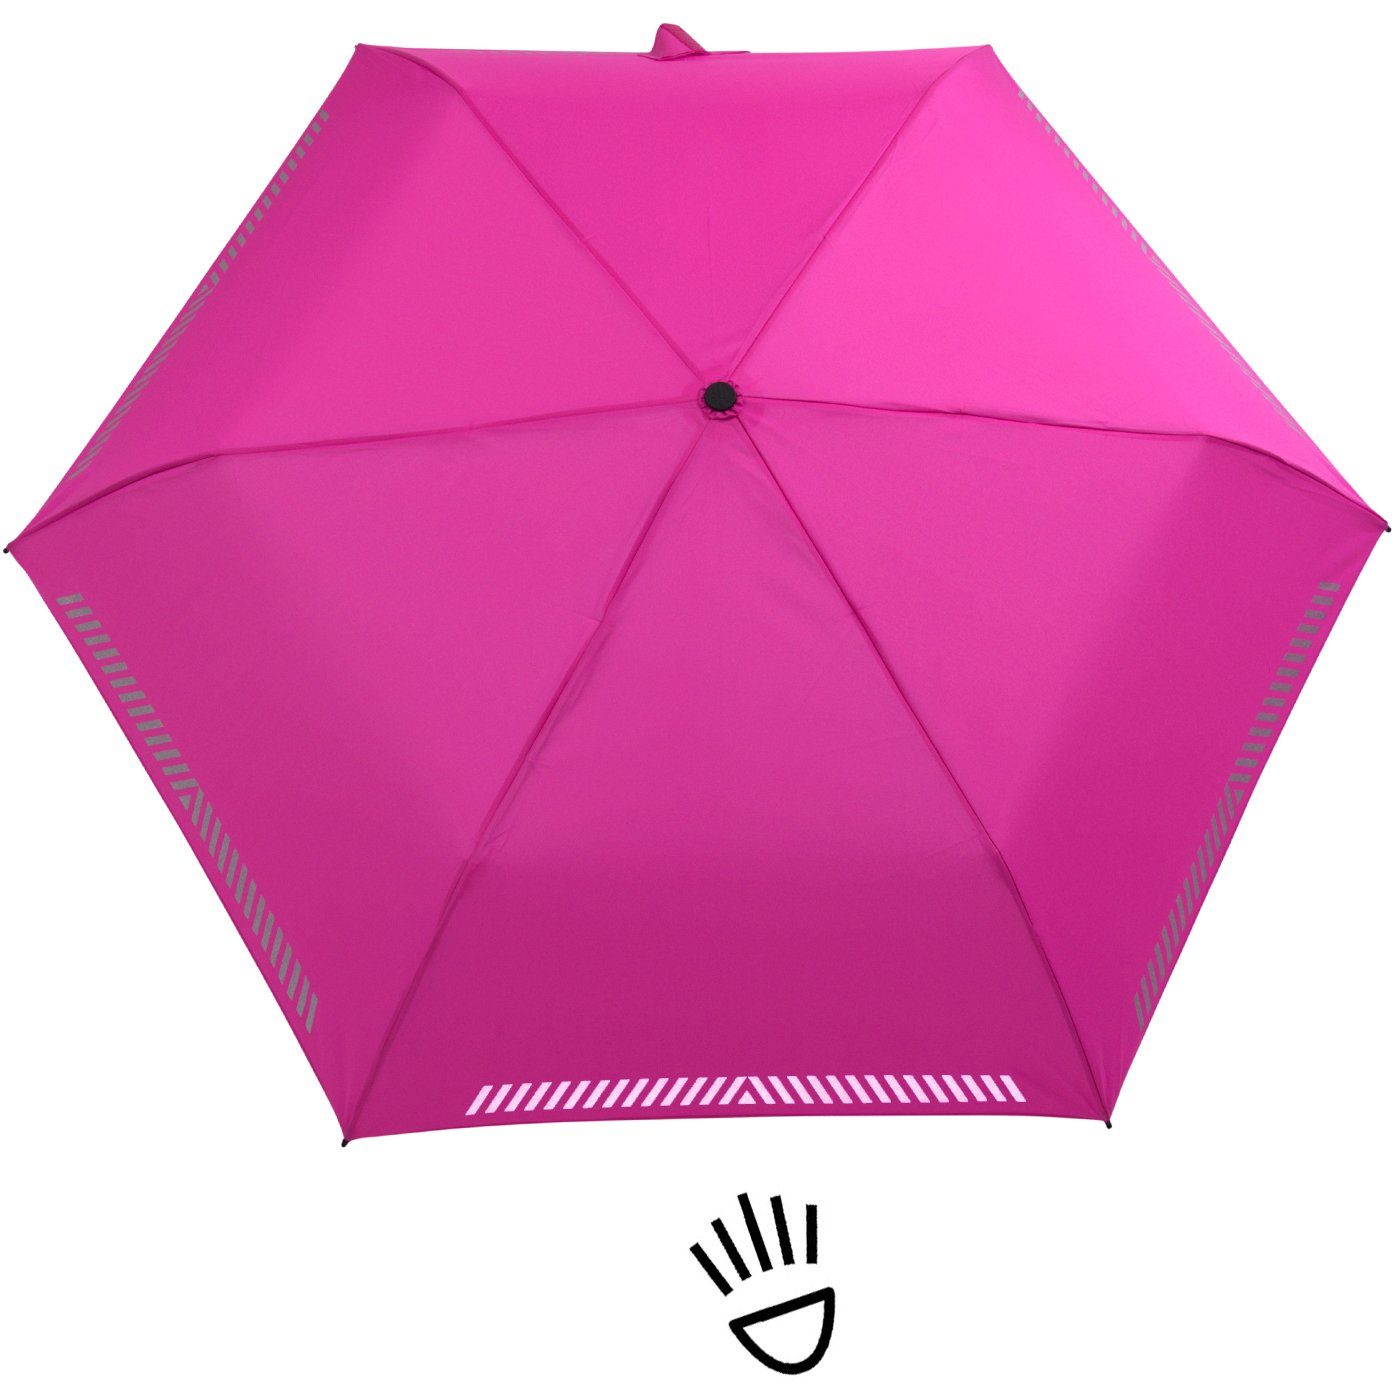 reflektierend, iX-brella mit - Sicherheit Taschenregenschirm Kinderschirm pink Auf-Zu-Automatik, neon Reflex-Streifen durch